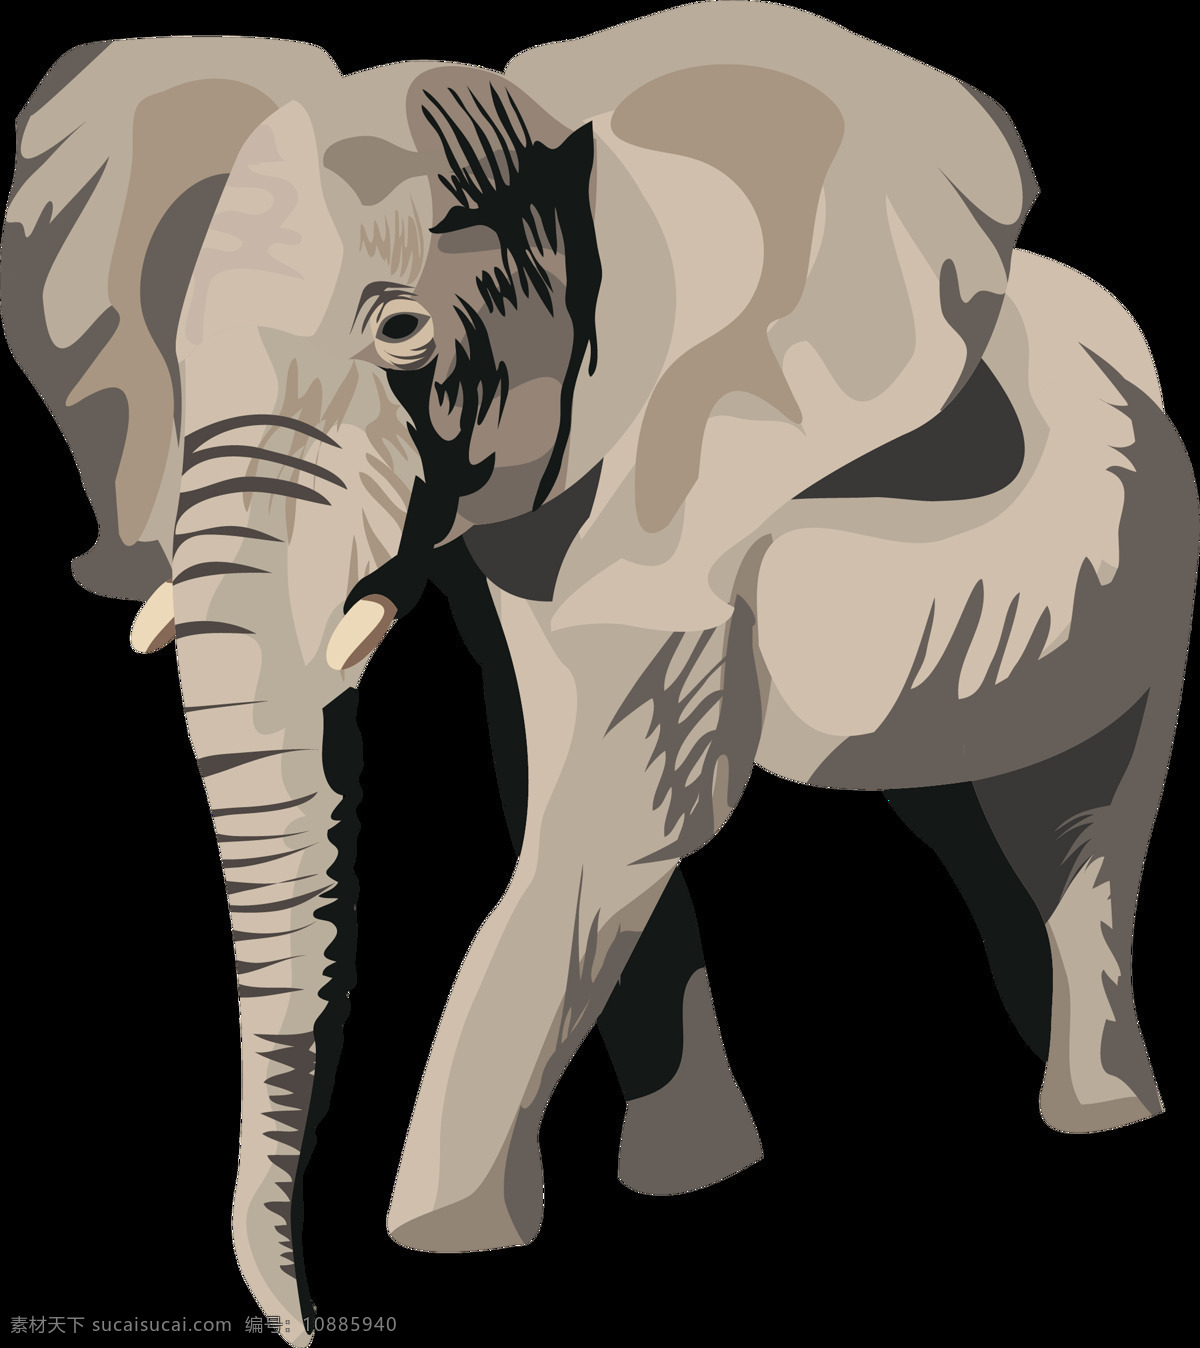 手绘 卡通 动物 大象 高清 透明 手绘大象 卡通大象 卡通动物 大象高清图案 大象png图 生物世界 野生动物